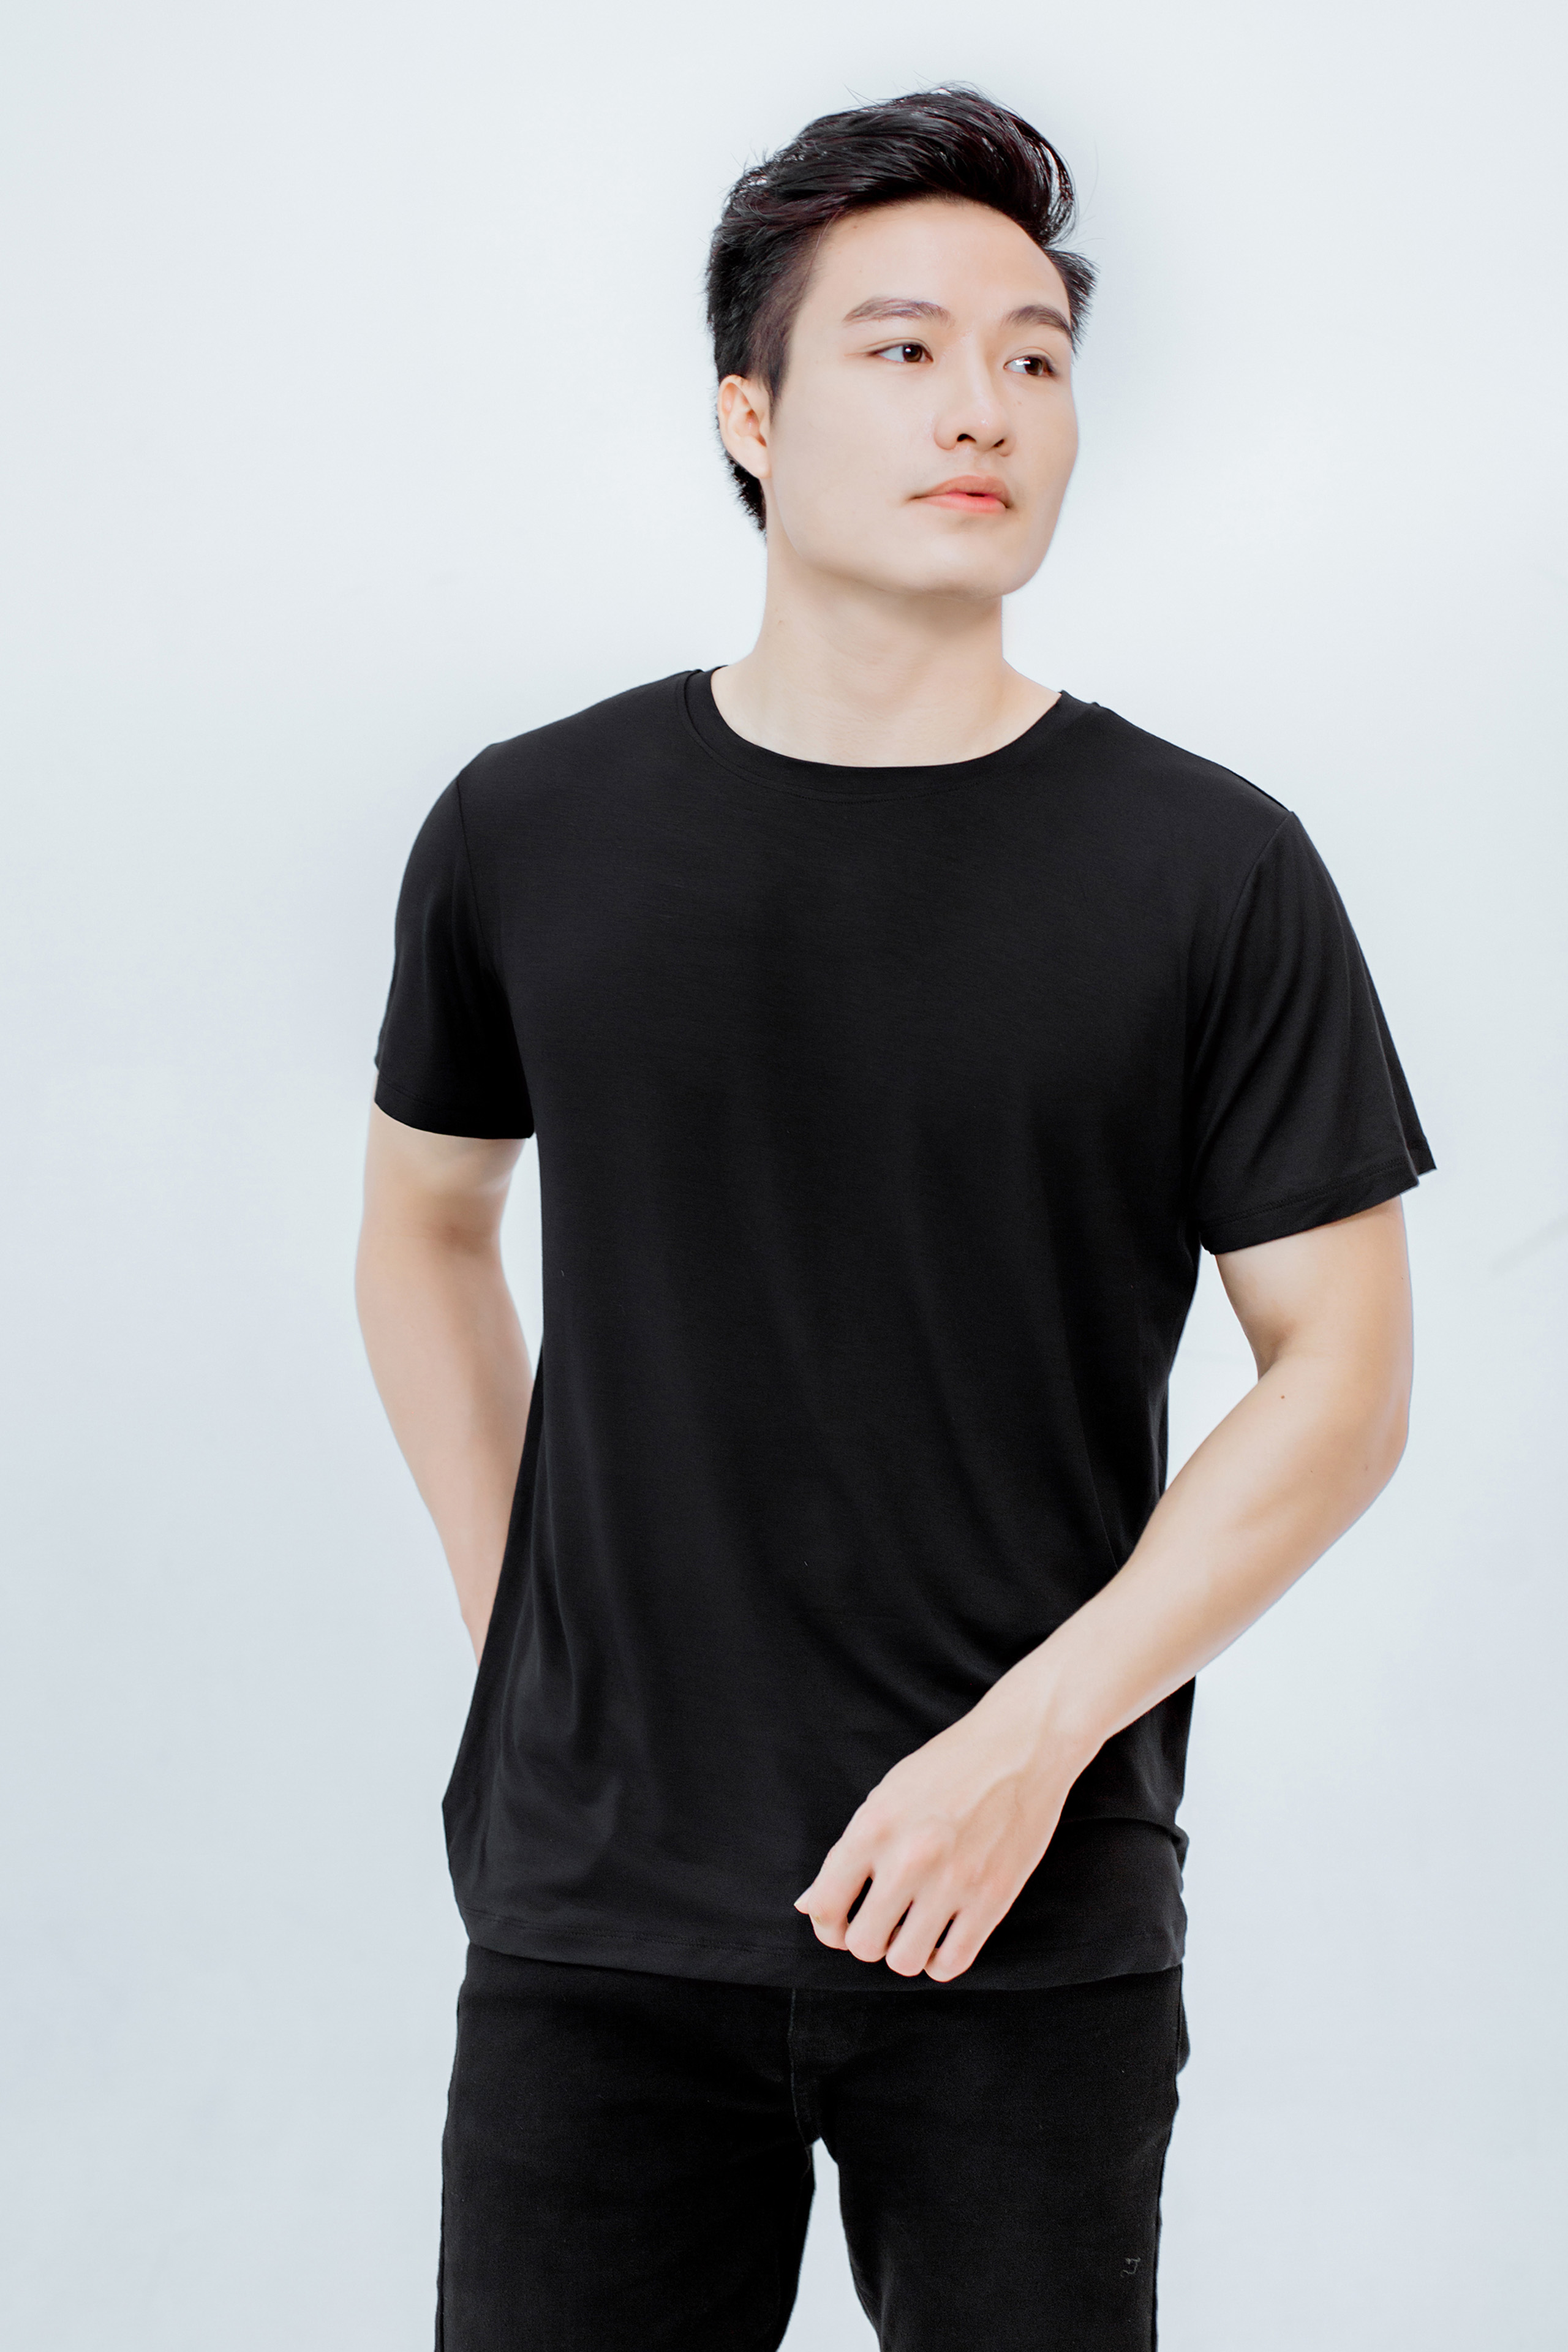 Áo T-shirt nam cổ tròn vải bamboo cao cấp Chou's - màu đen